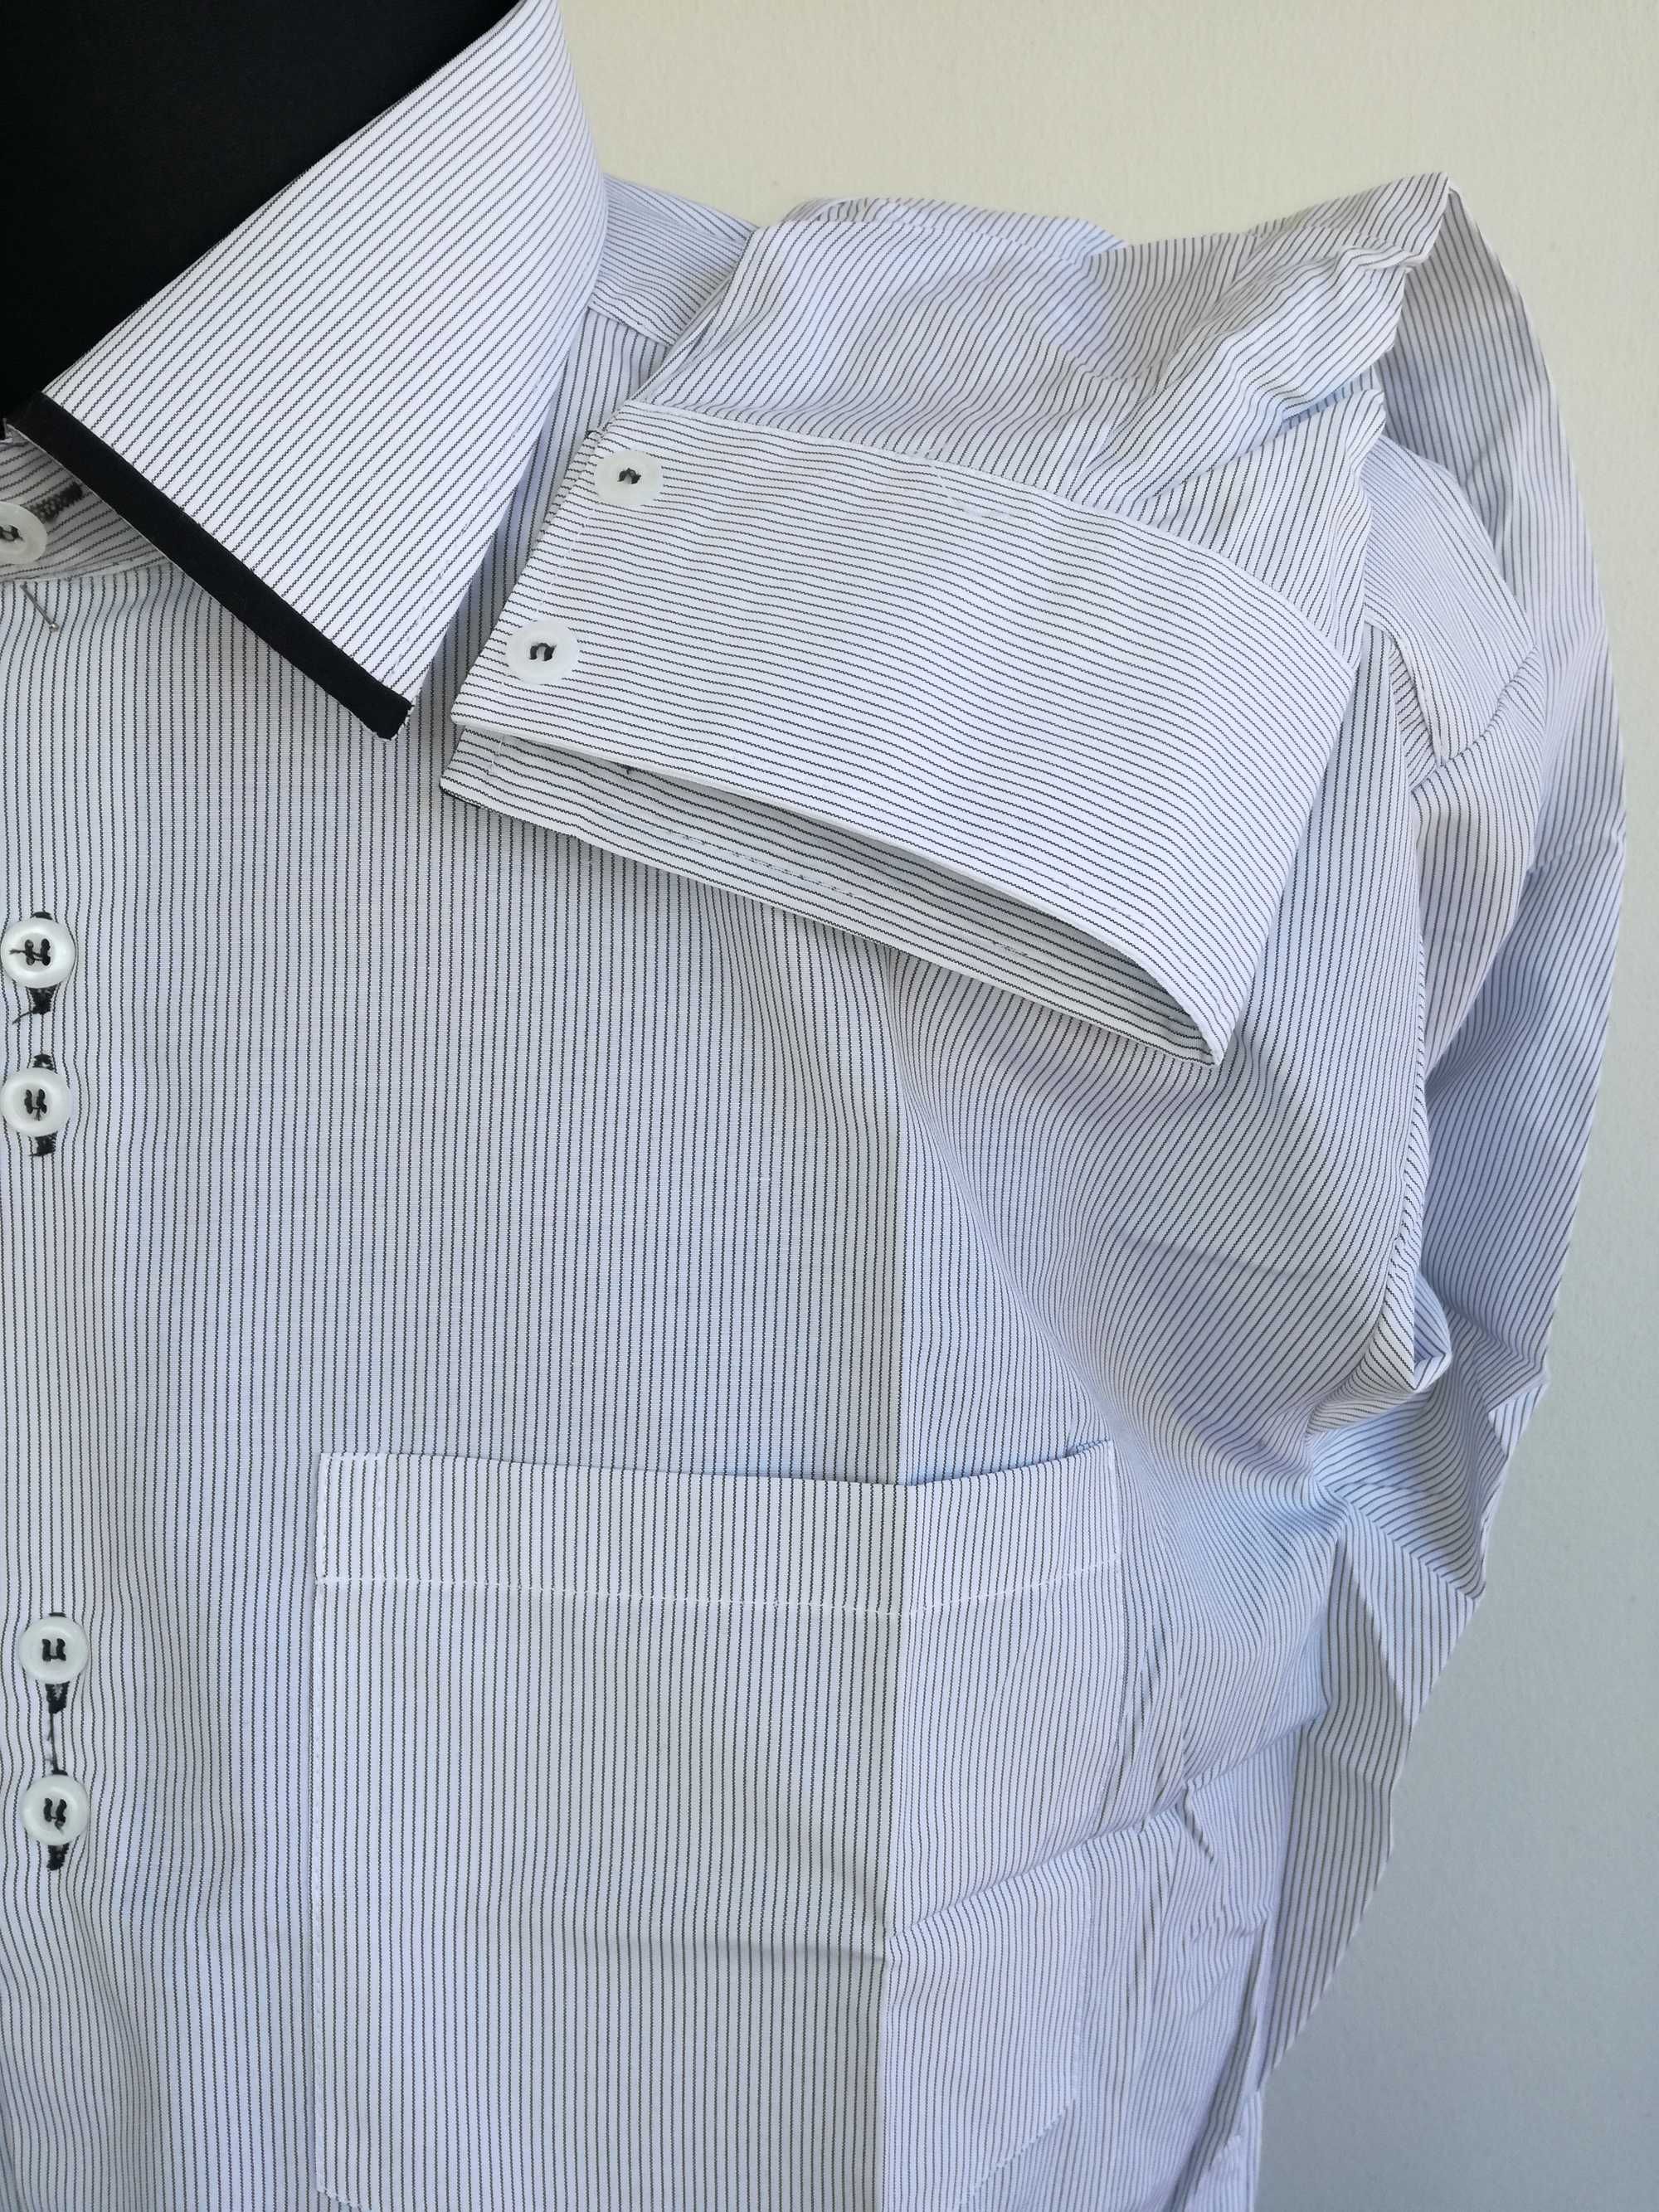 Koszula męska nowa 43-44 rozmiar z metką 176-182 wzrost biała w  paski